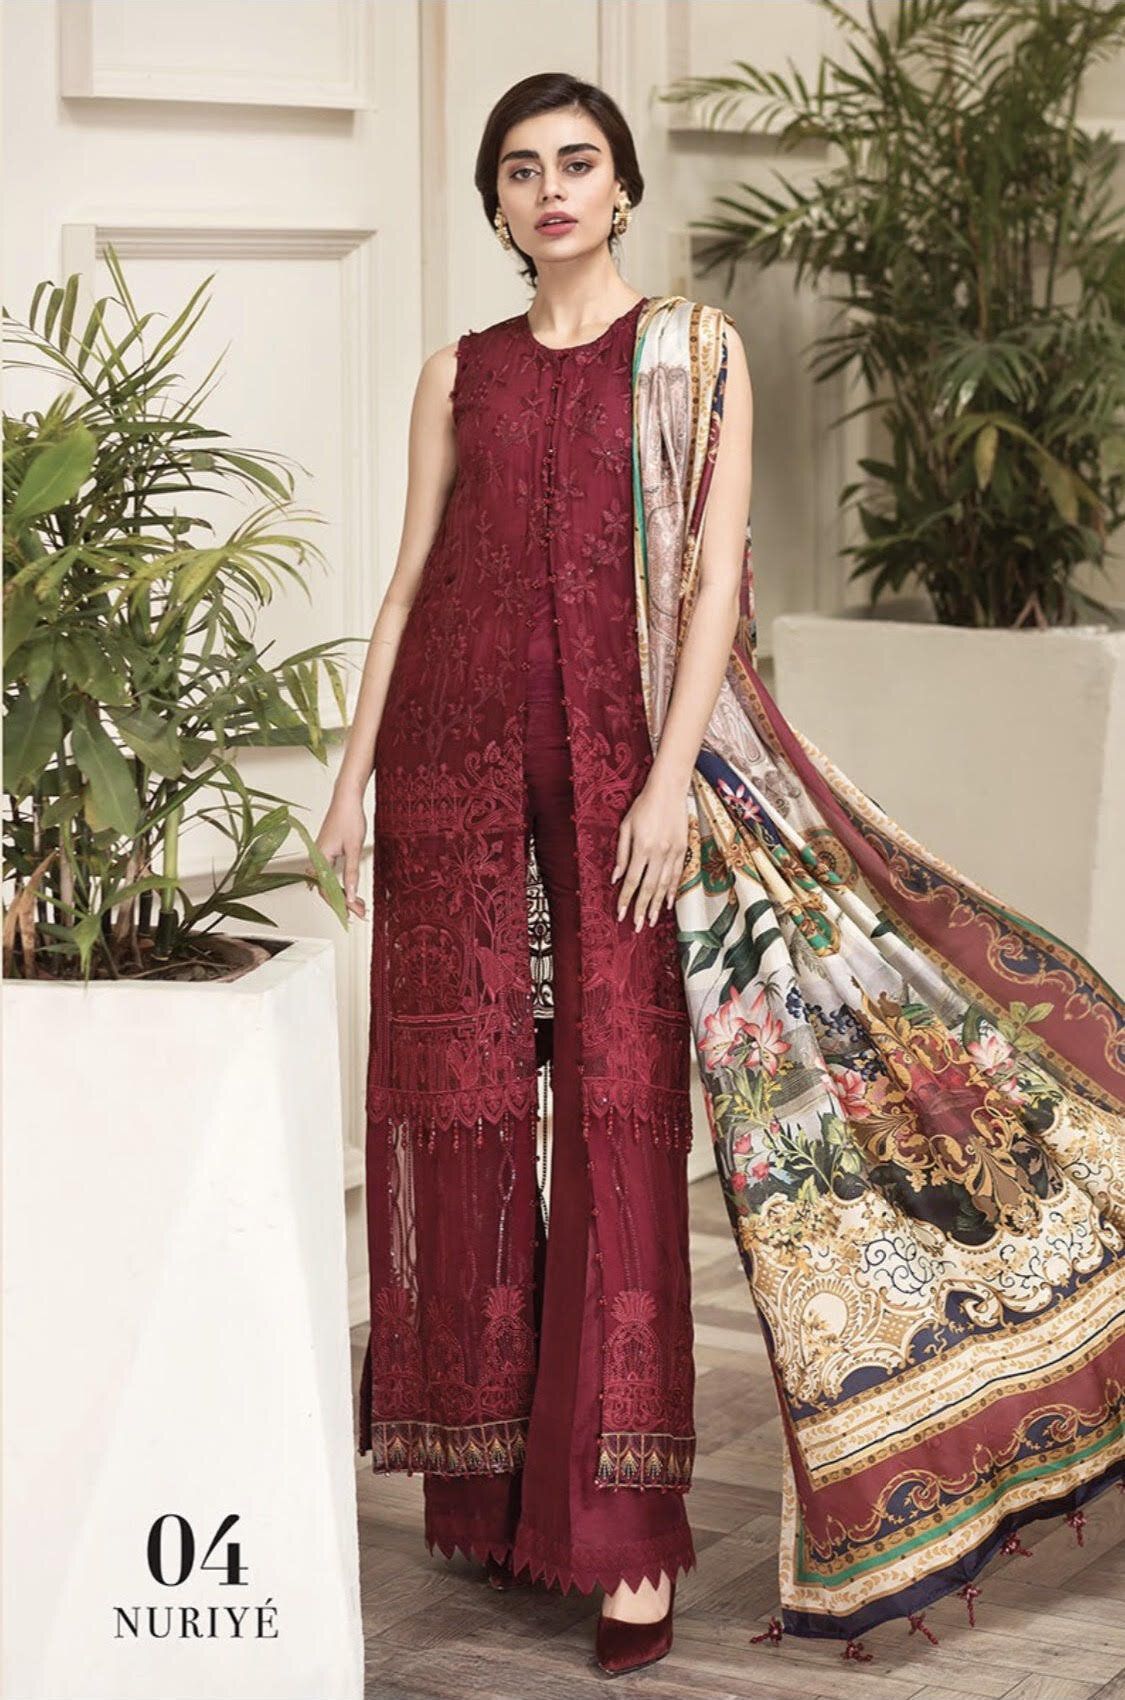 Designer Salwar kameez | Designer Punjab Suits | Pakistani Salwar Kameez -   16 dress Indian punjabi ideas